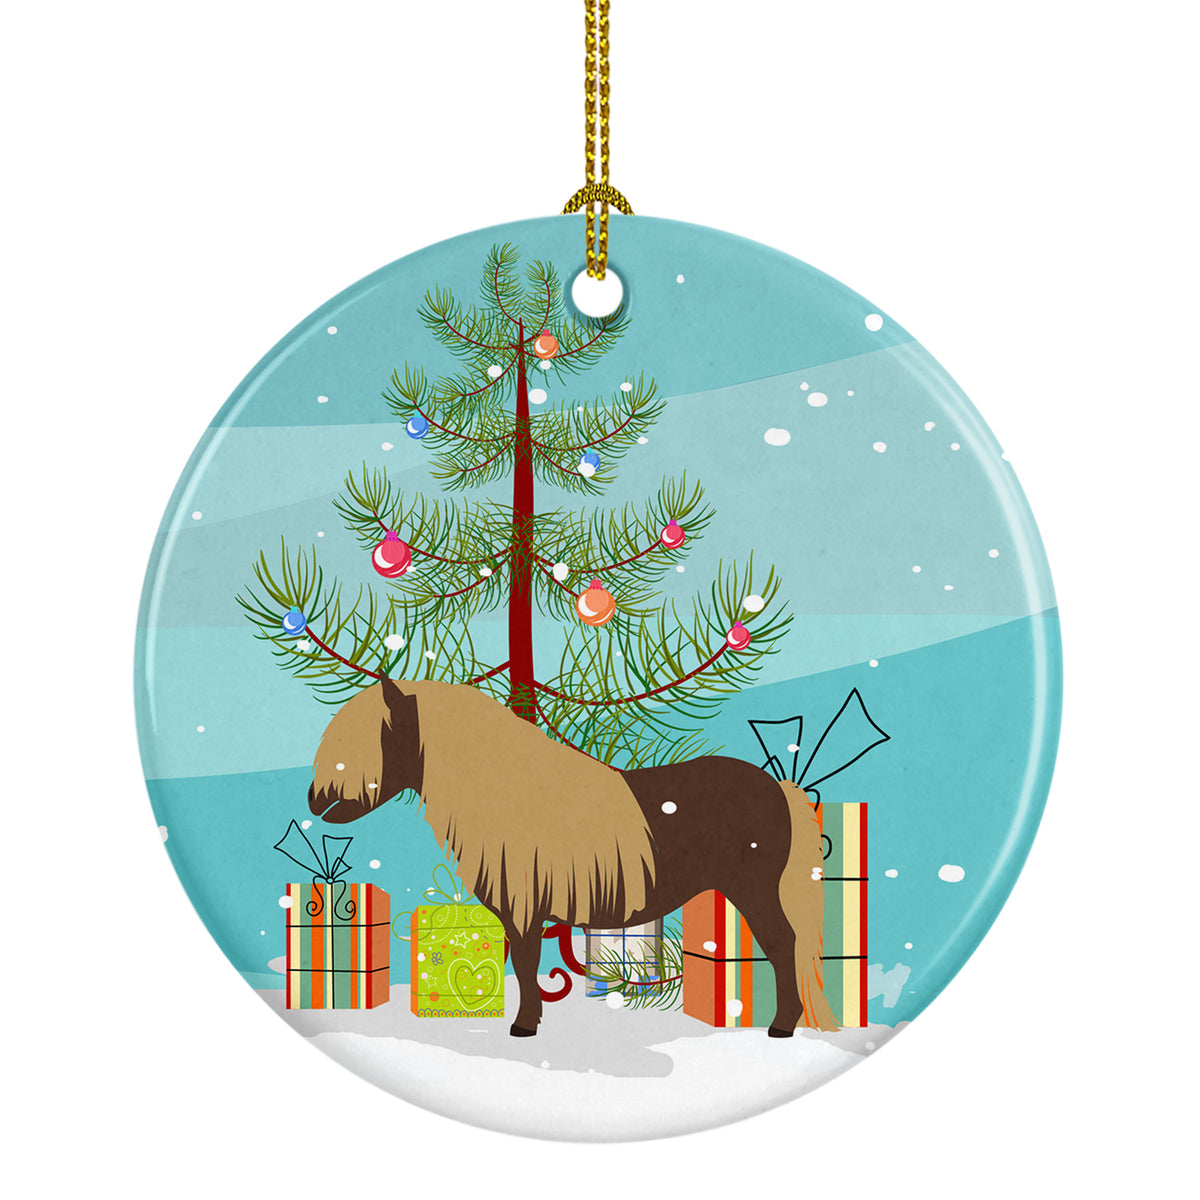 Shetland Pony Horse Christmas Ceramic Ornament BB9281CO1 - the-store.com